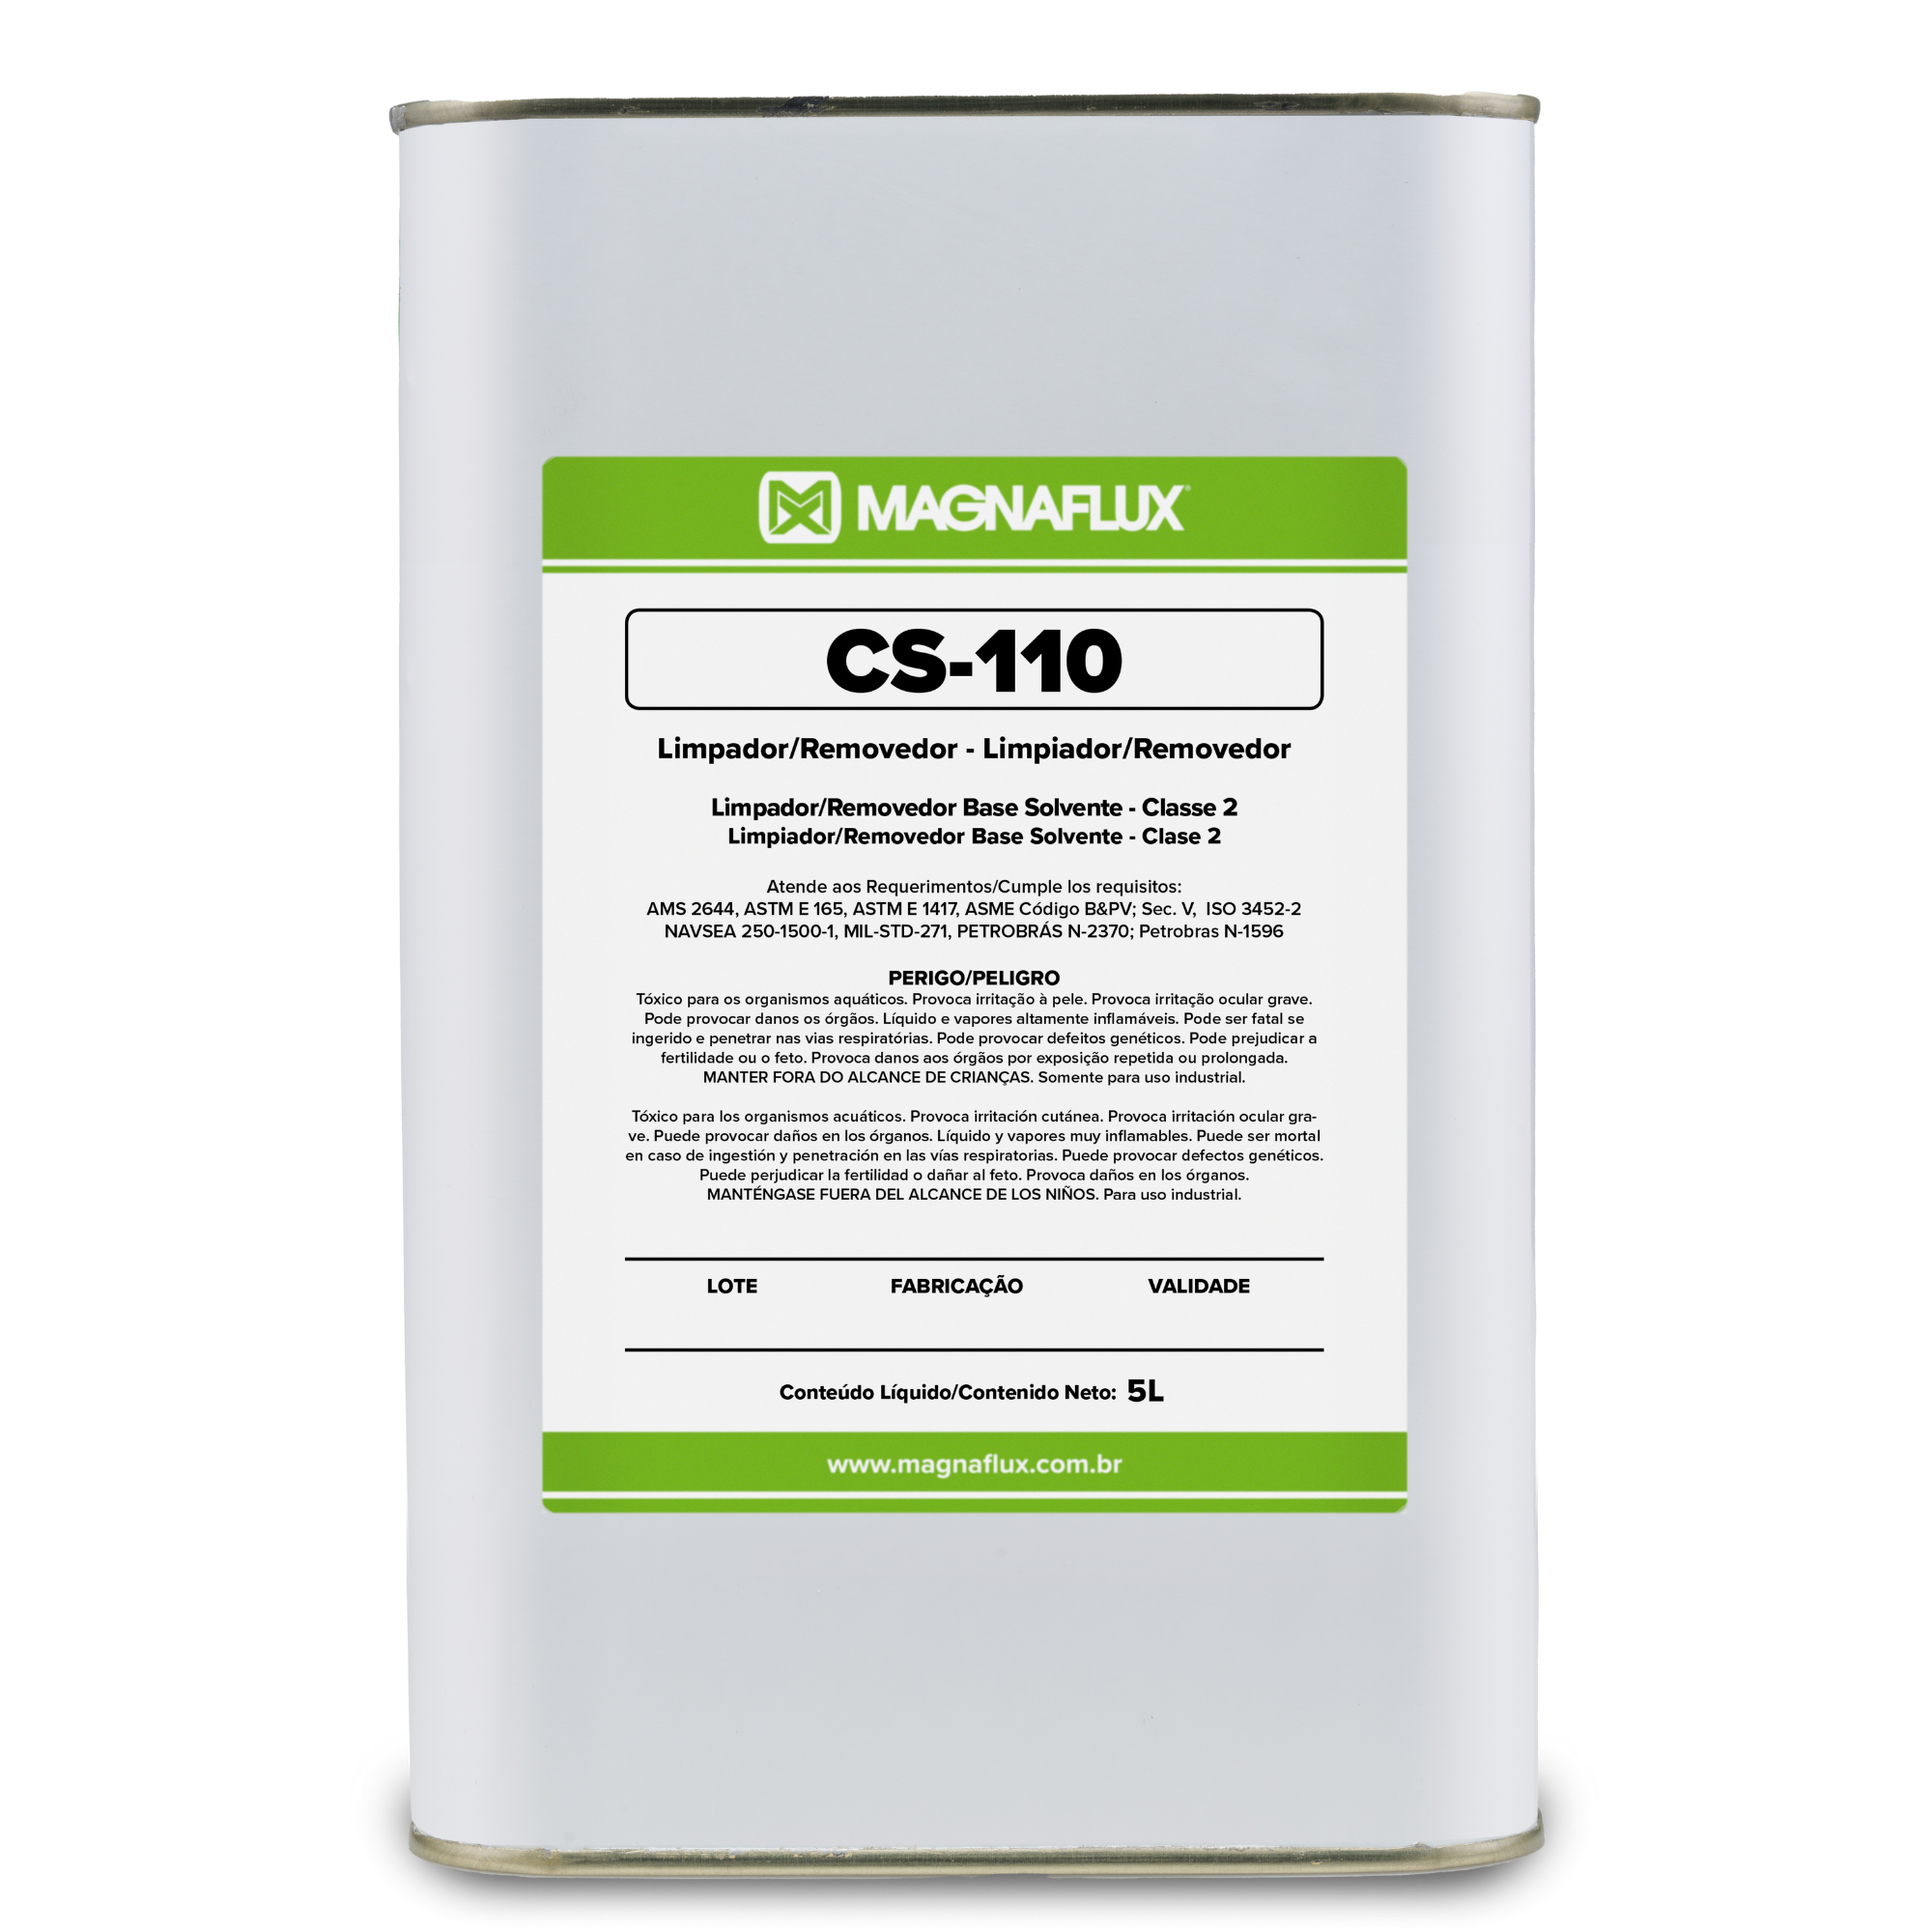 Limpador/Removedor CS-110 - Magnaflux